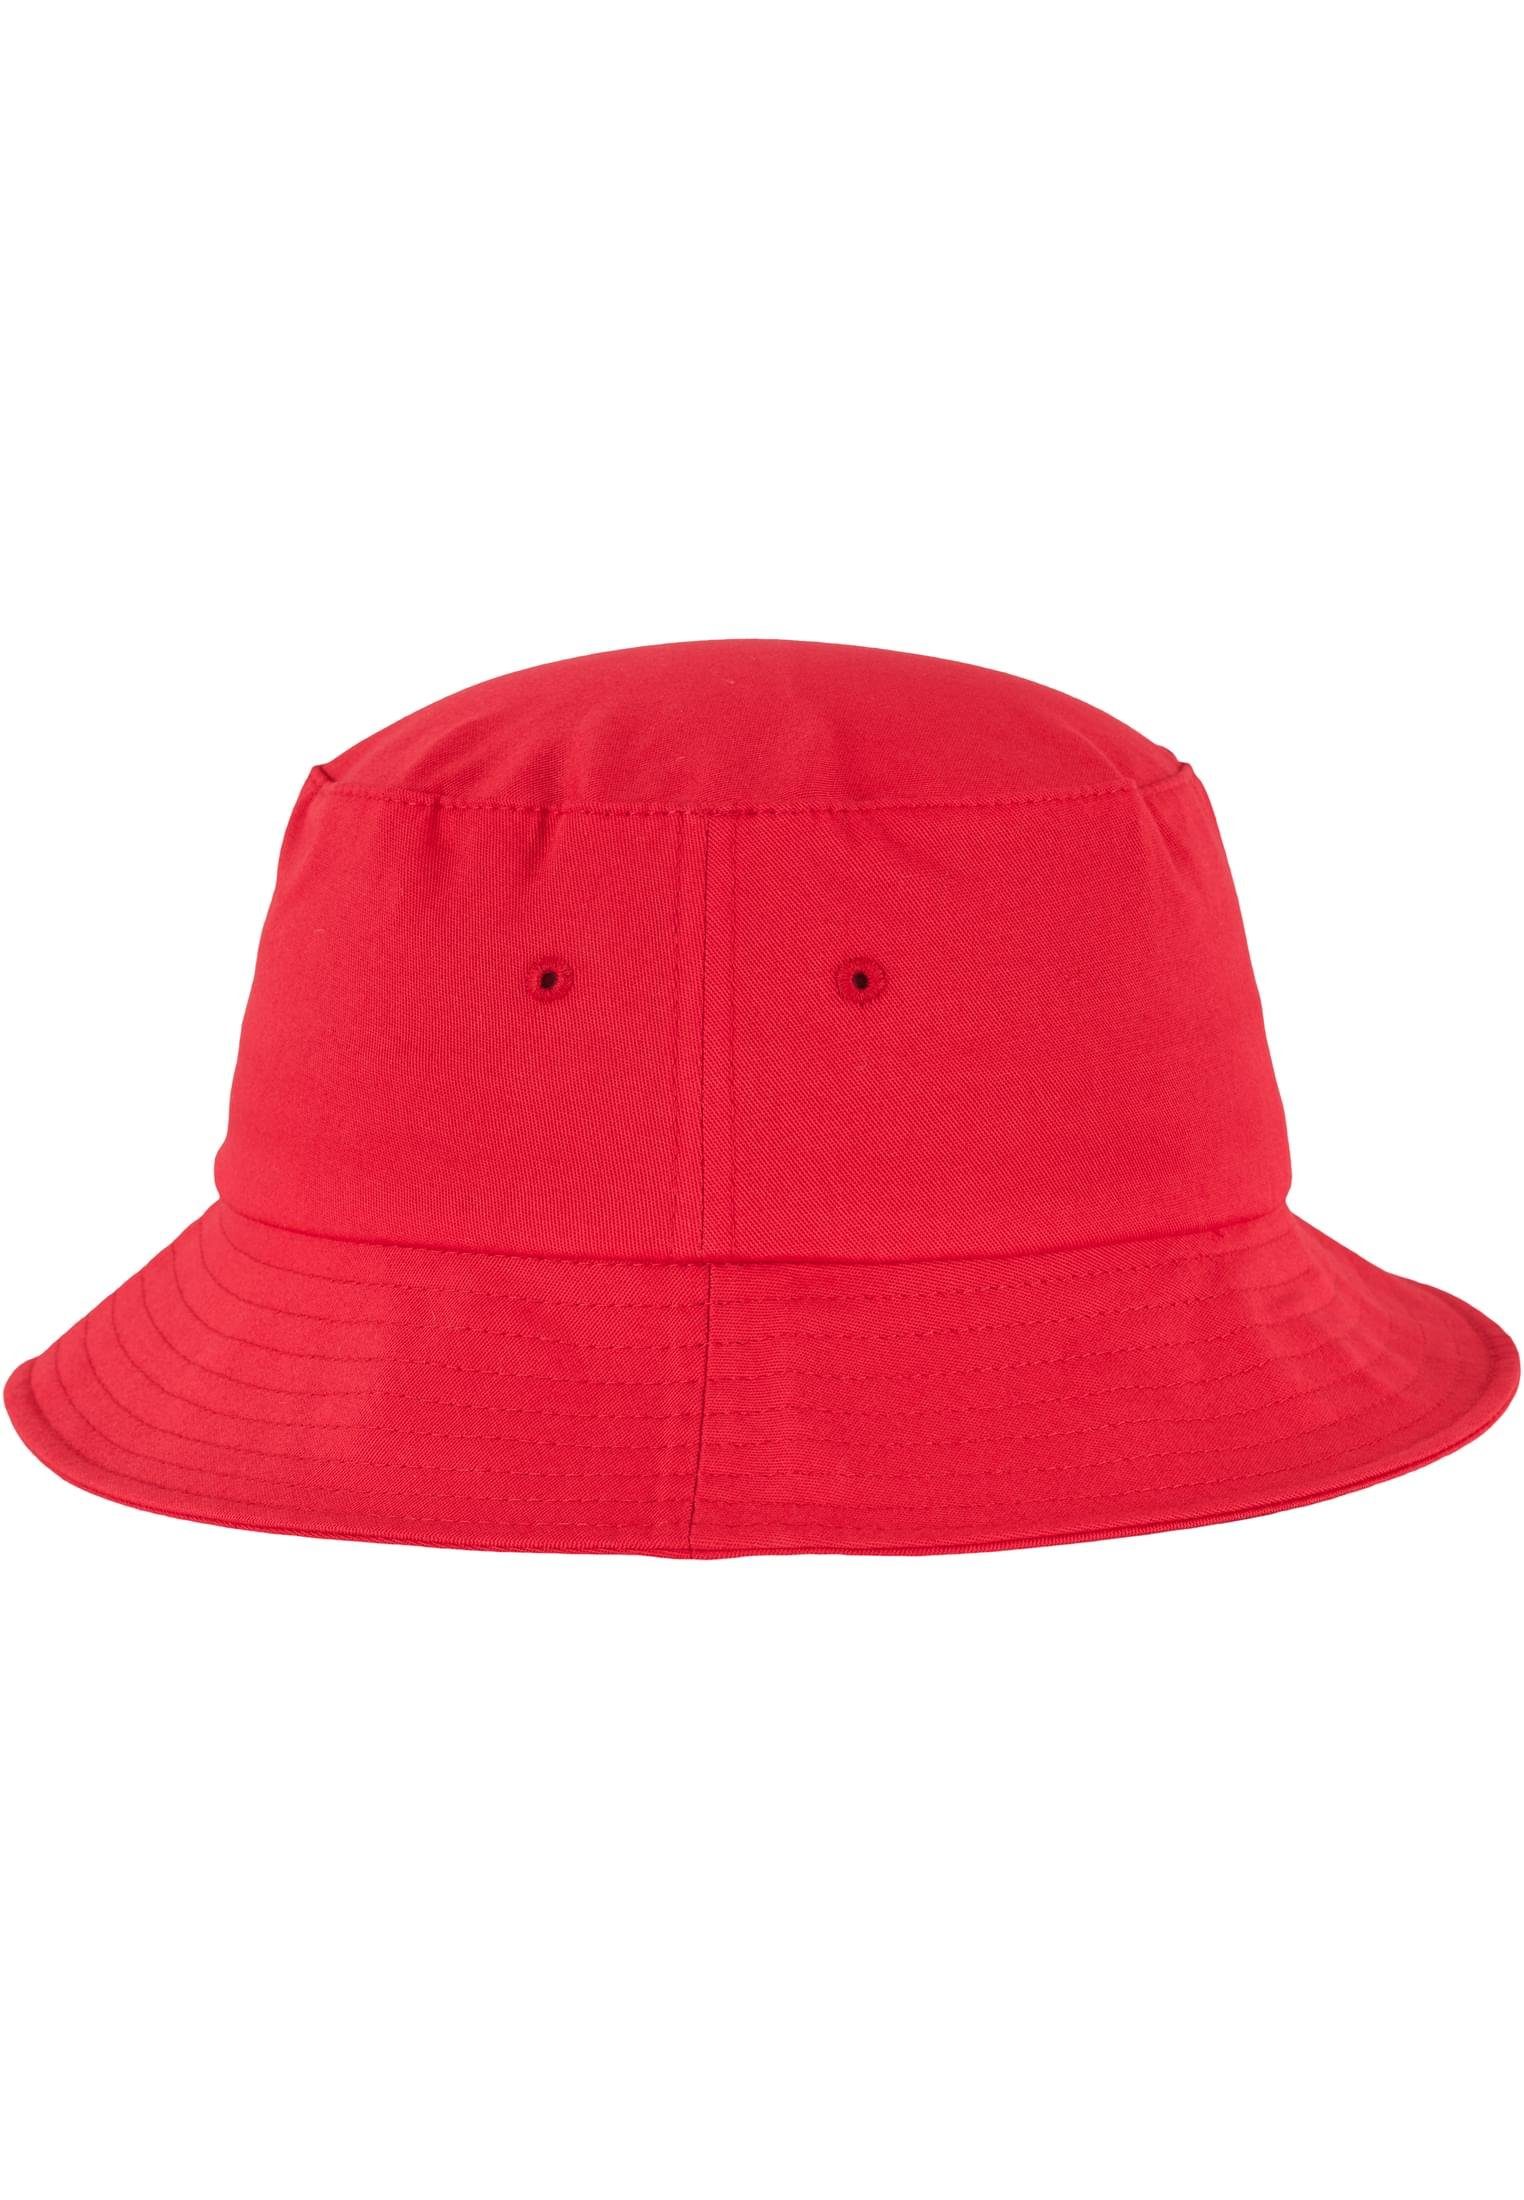 Twill red Bucket Accessoires Flex Cotton Flexfit Cap Hat Flexfit